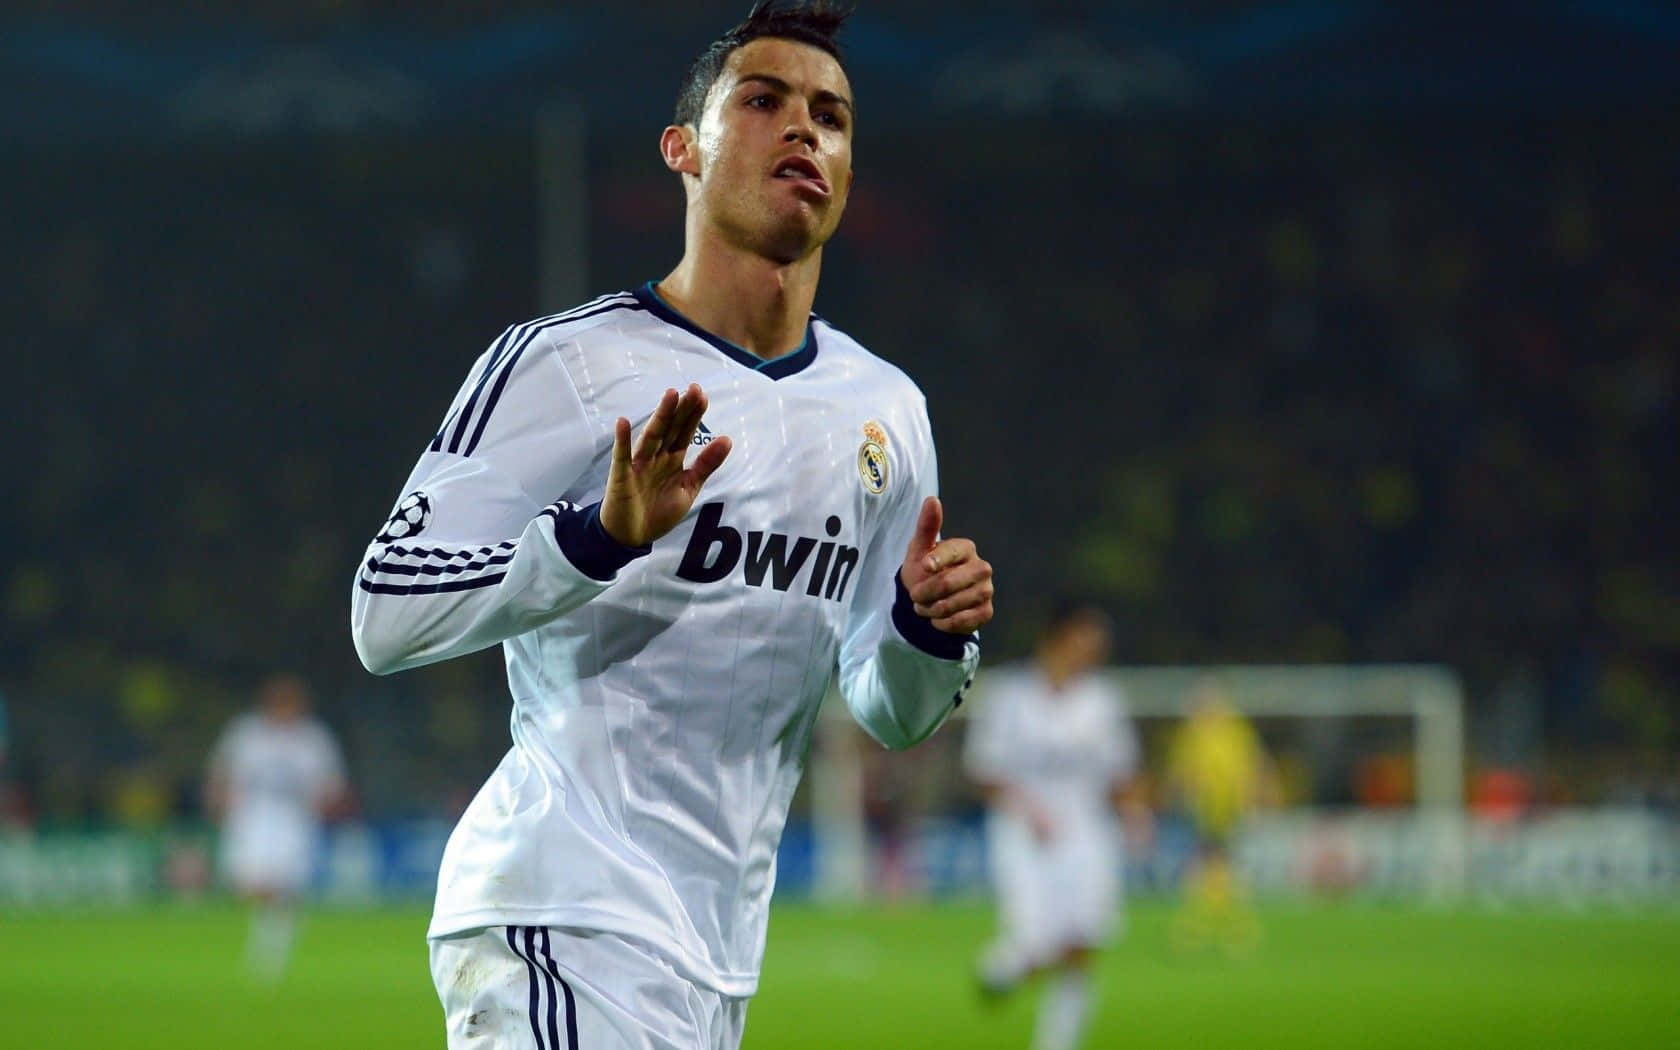 Soccer phenom Cristiano Ronaldo